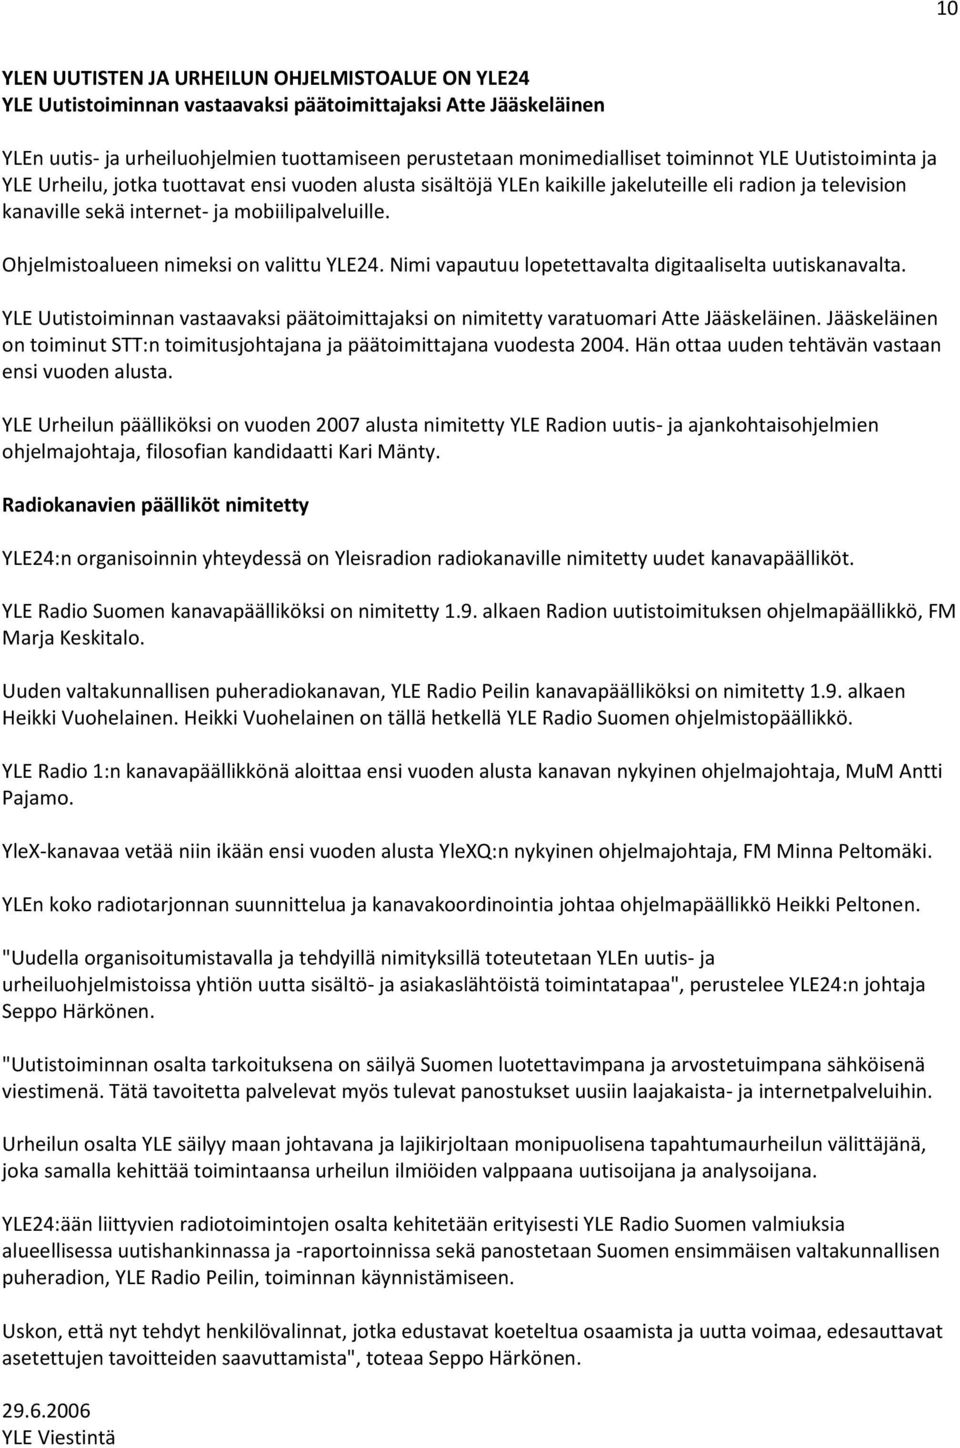 Ohjelmistoalueen nimeksi on valittu YLE24. Nimi vapautuu lopetettavalta digitaaliselta uutiskanavalta. YLE Uutistoiminnan vastaavaksi päätoimittajaksi on nimitetty varatuomari Atte Jääskeläinen.